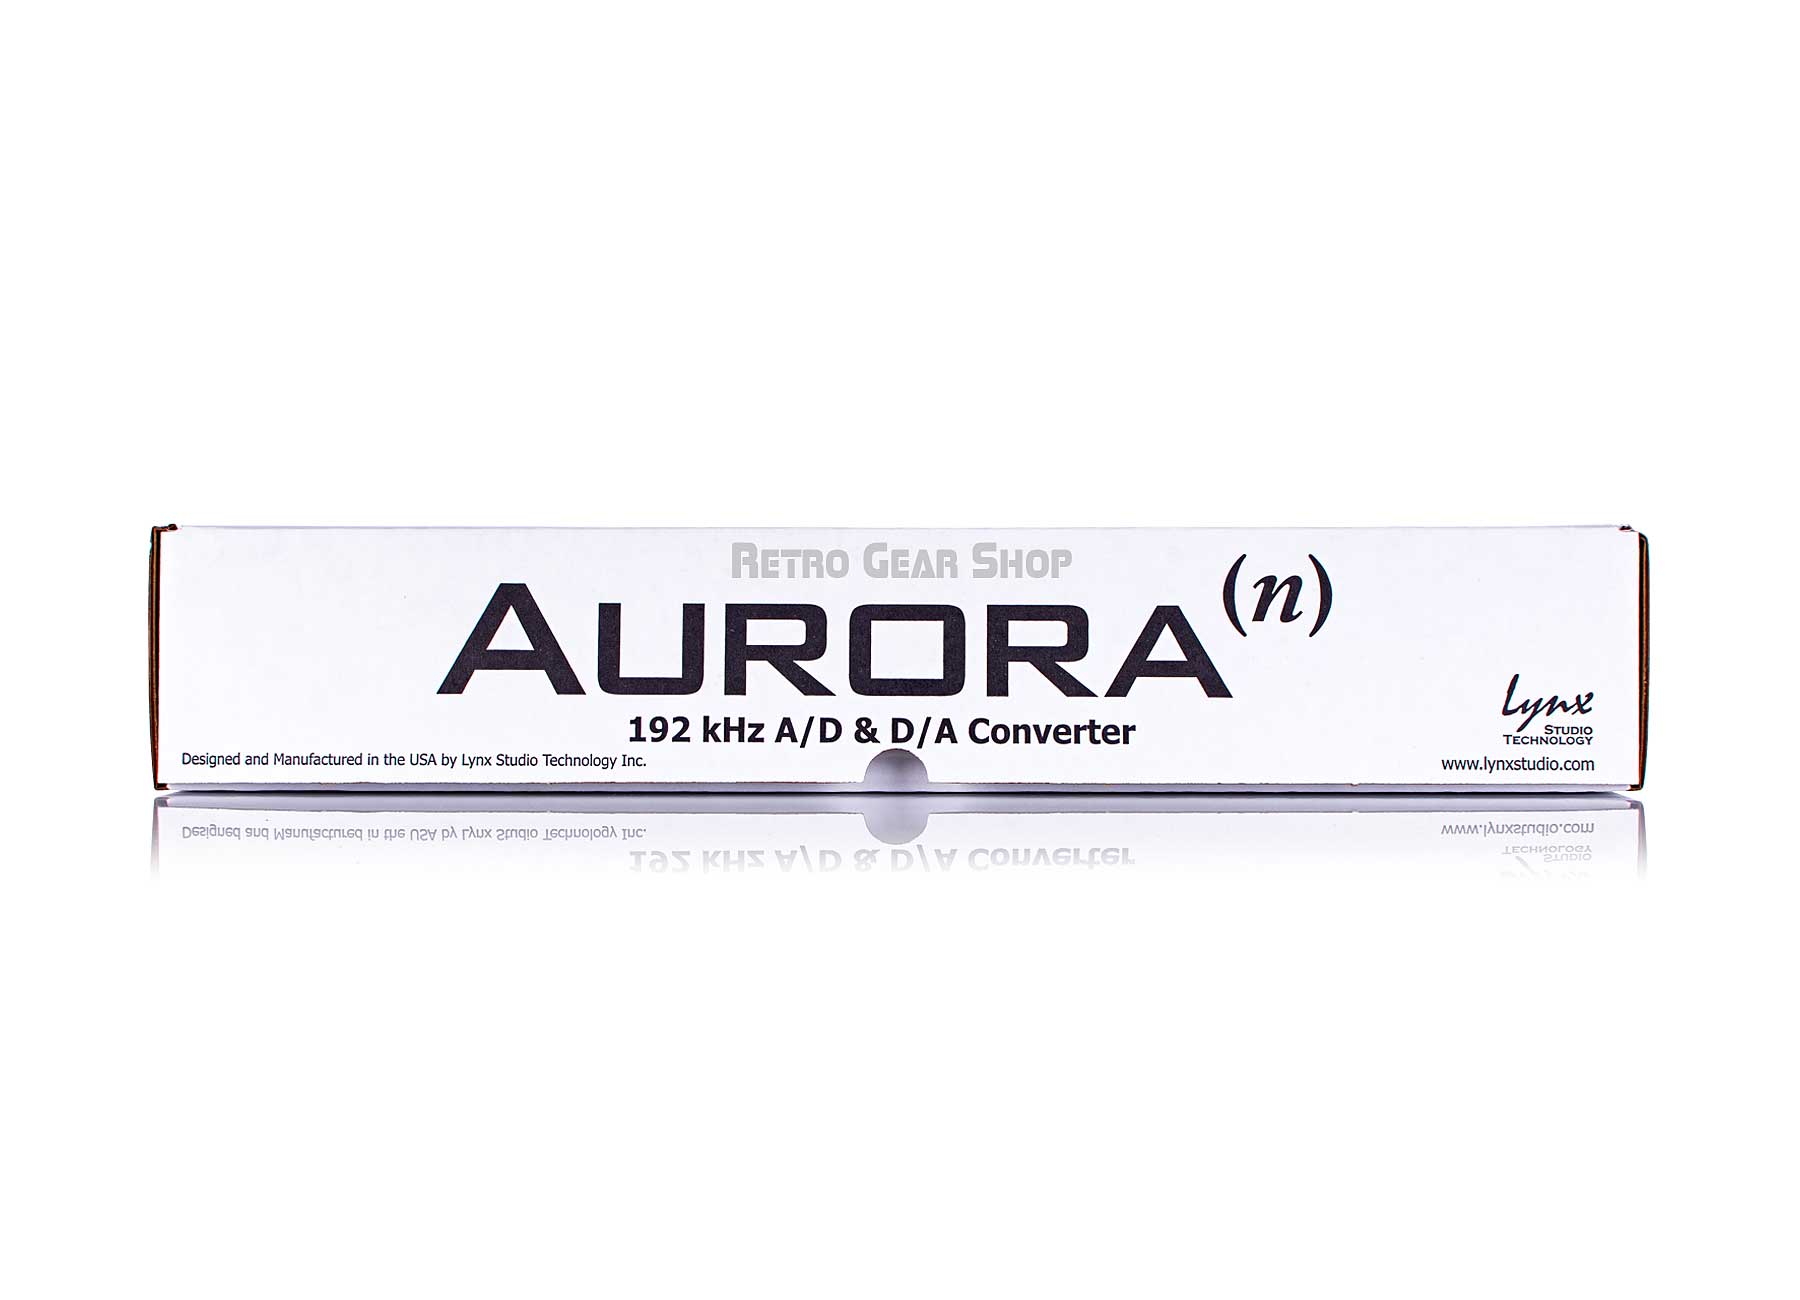 Lynx Aurora (n) 16 16-channel AD/DA Converter USB Original Box